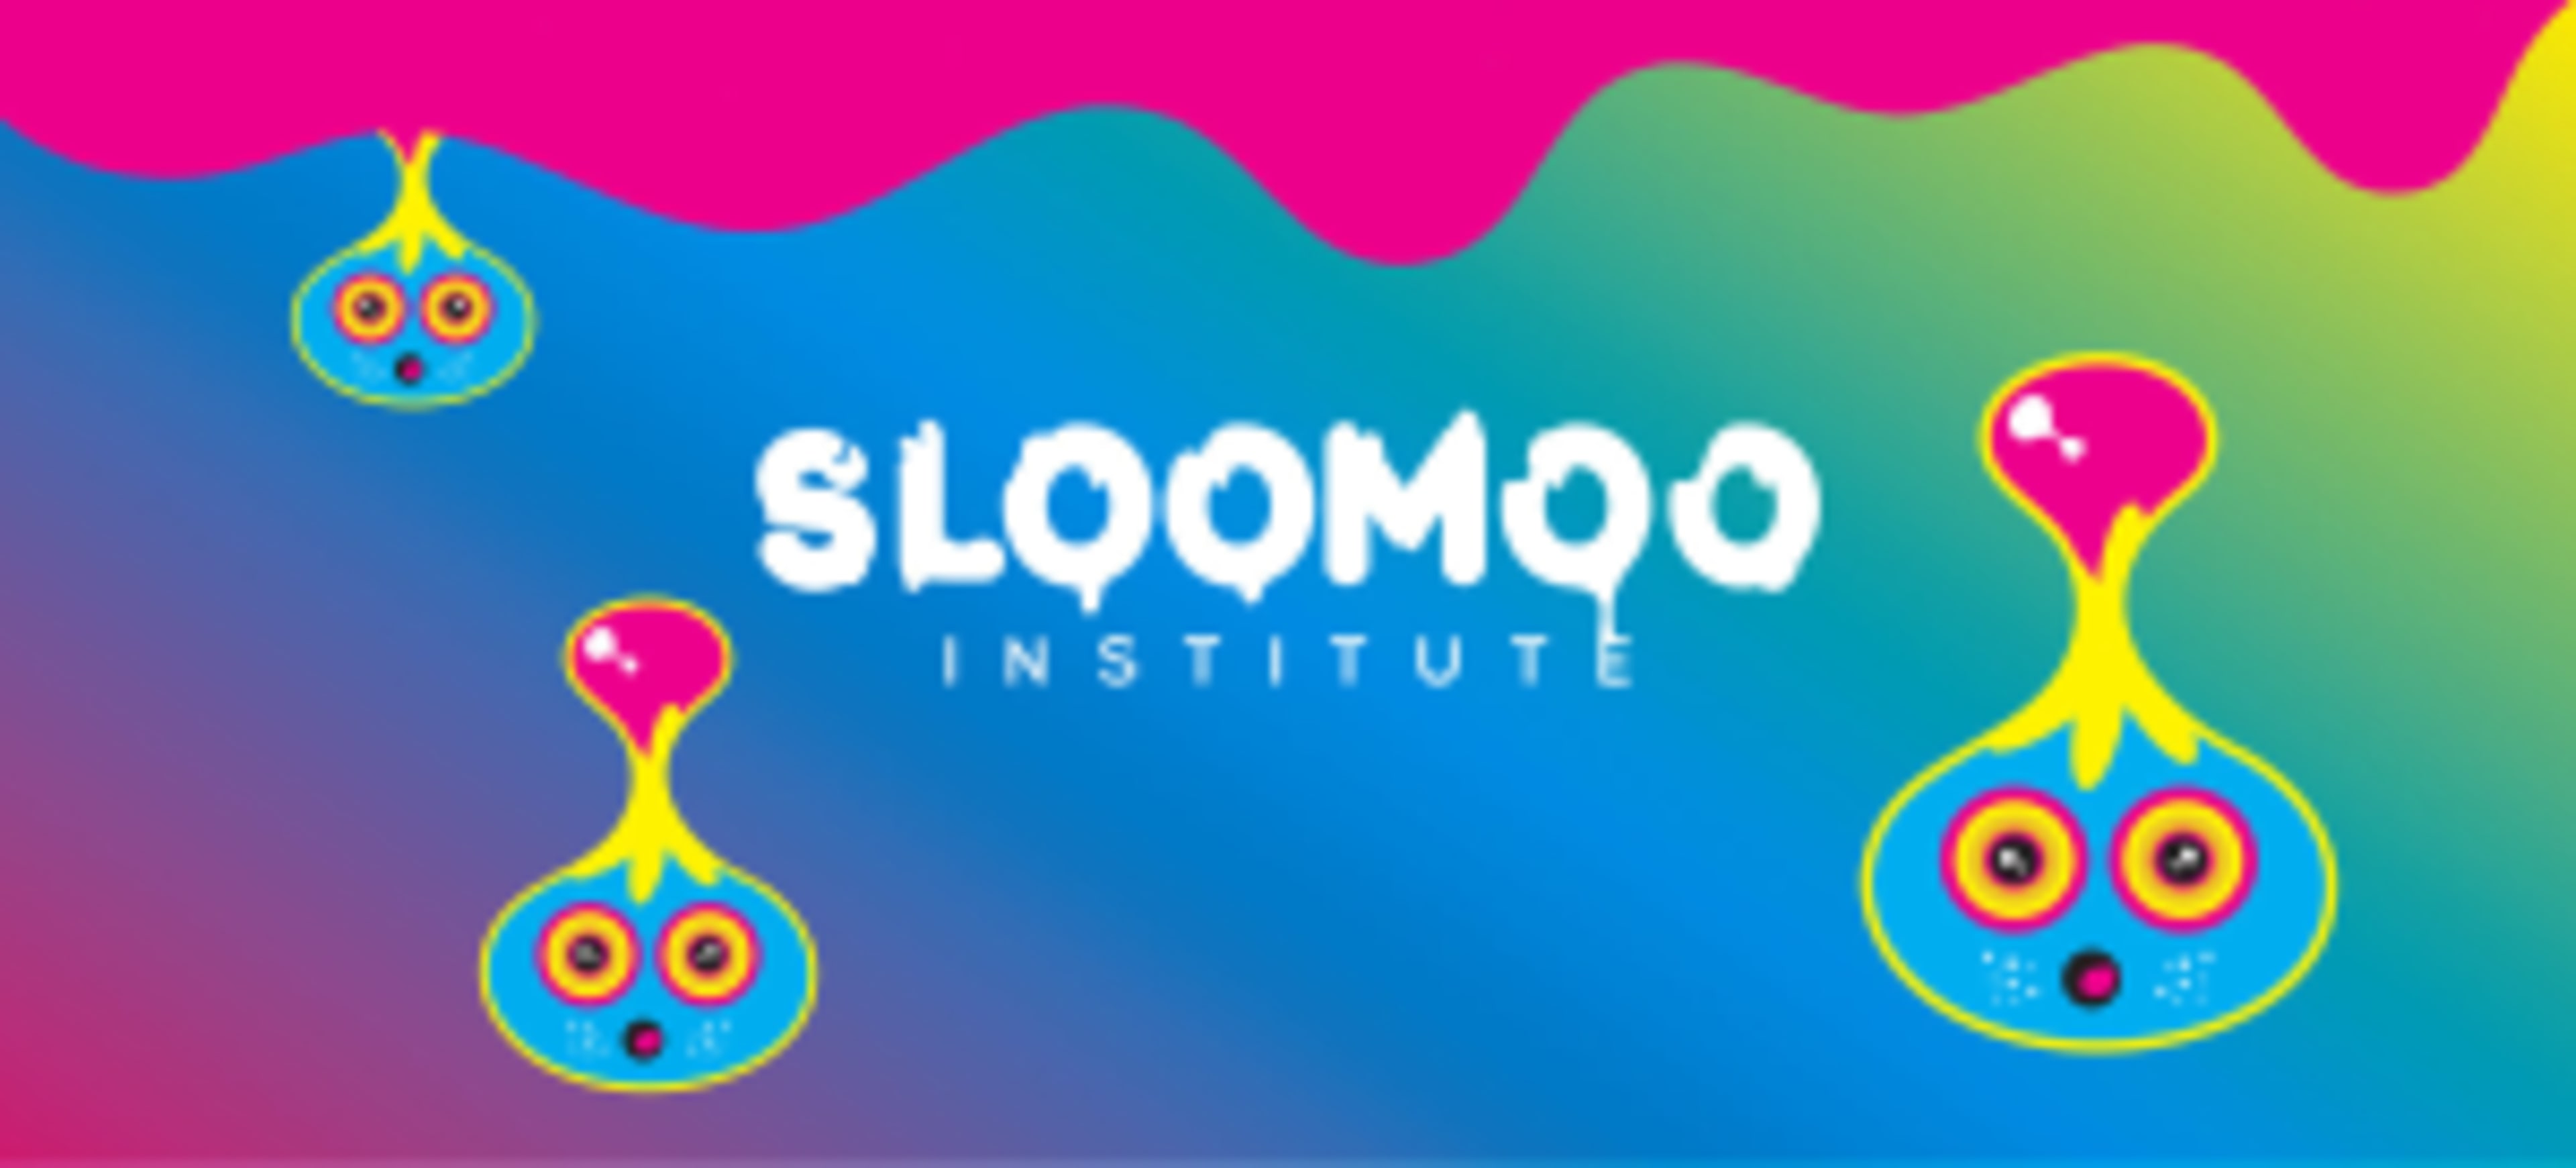 SlooMoo Institute Code